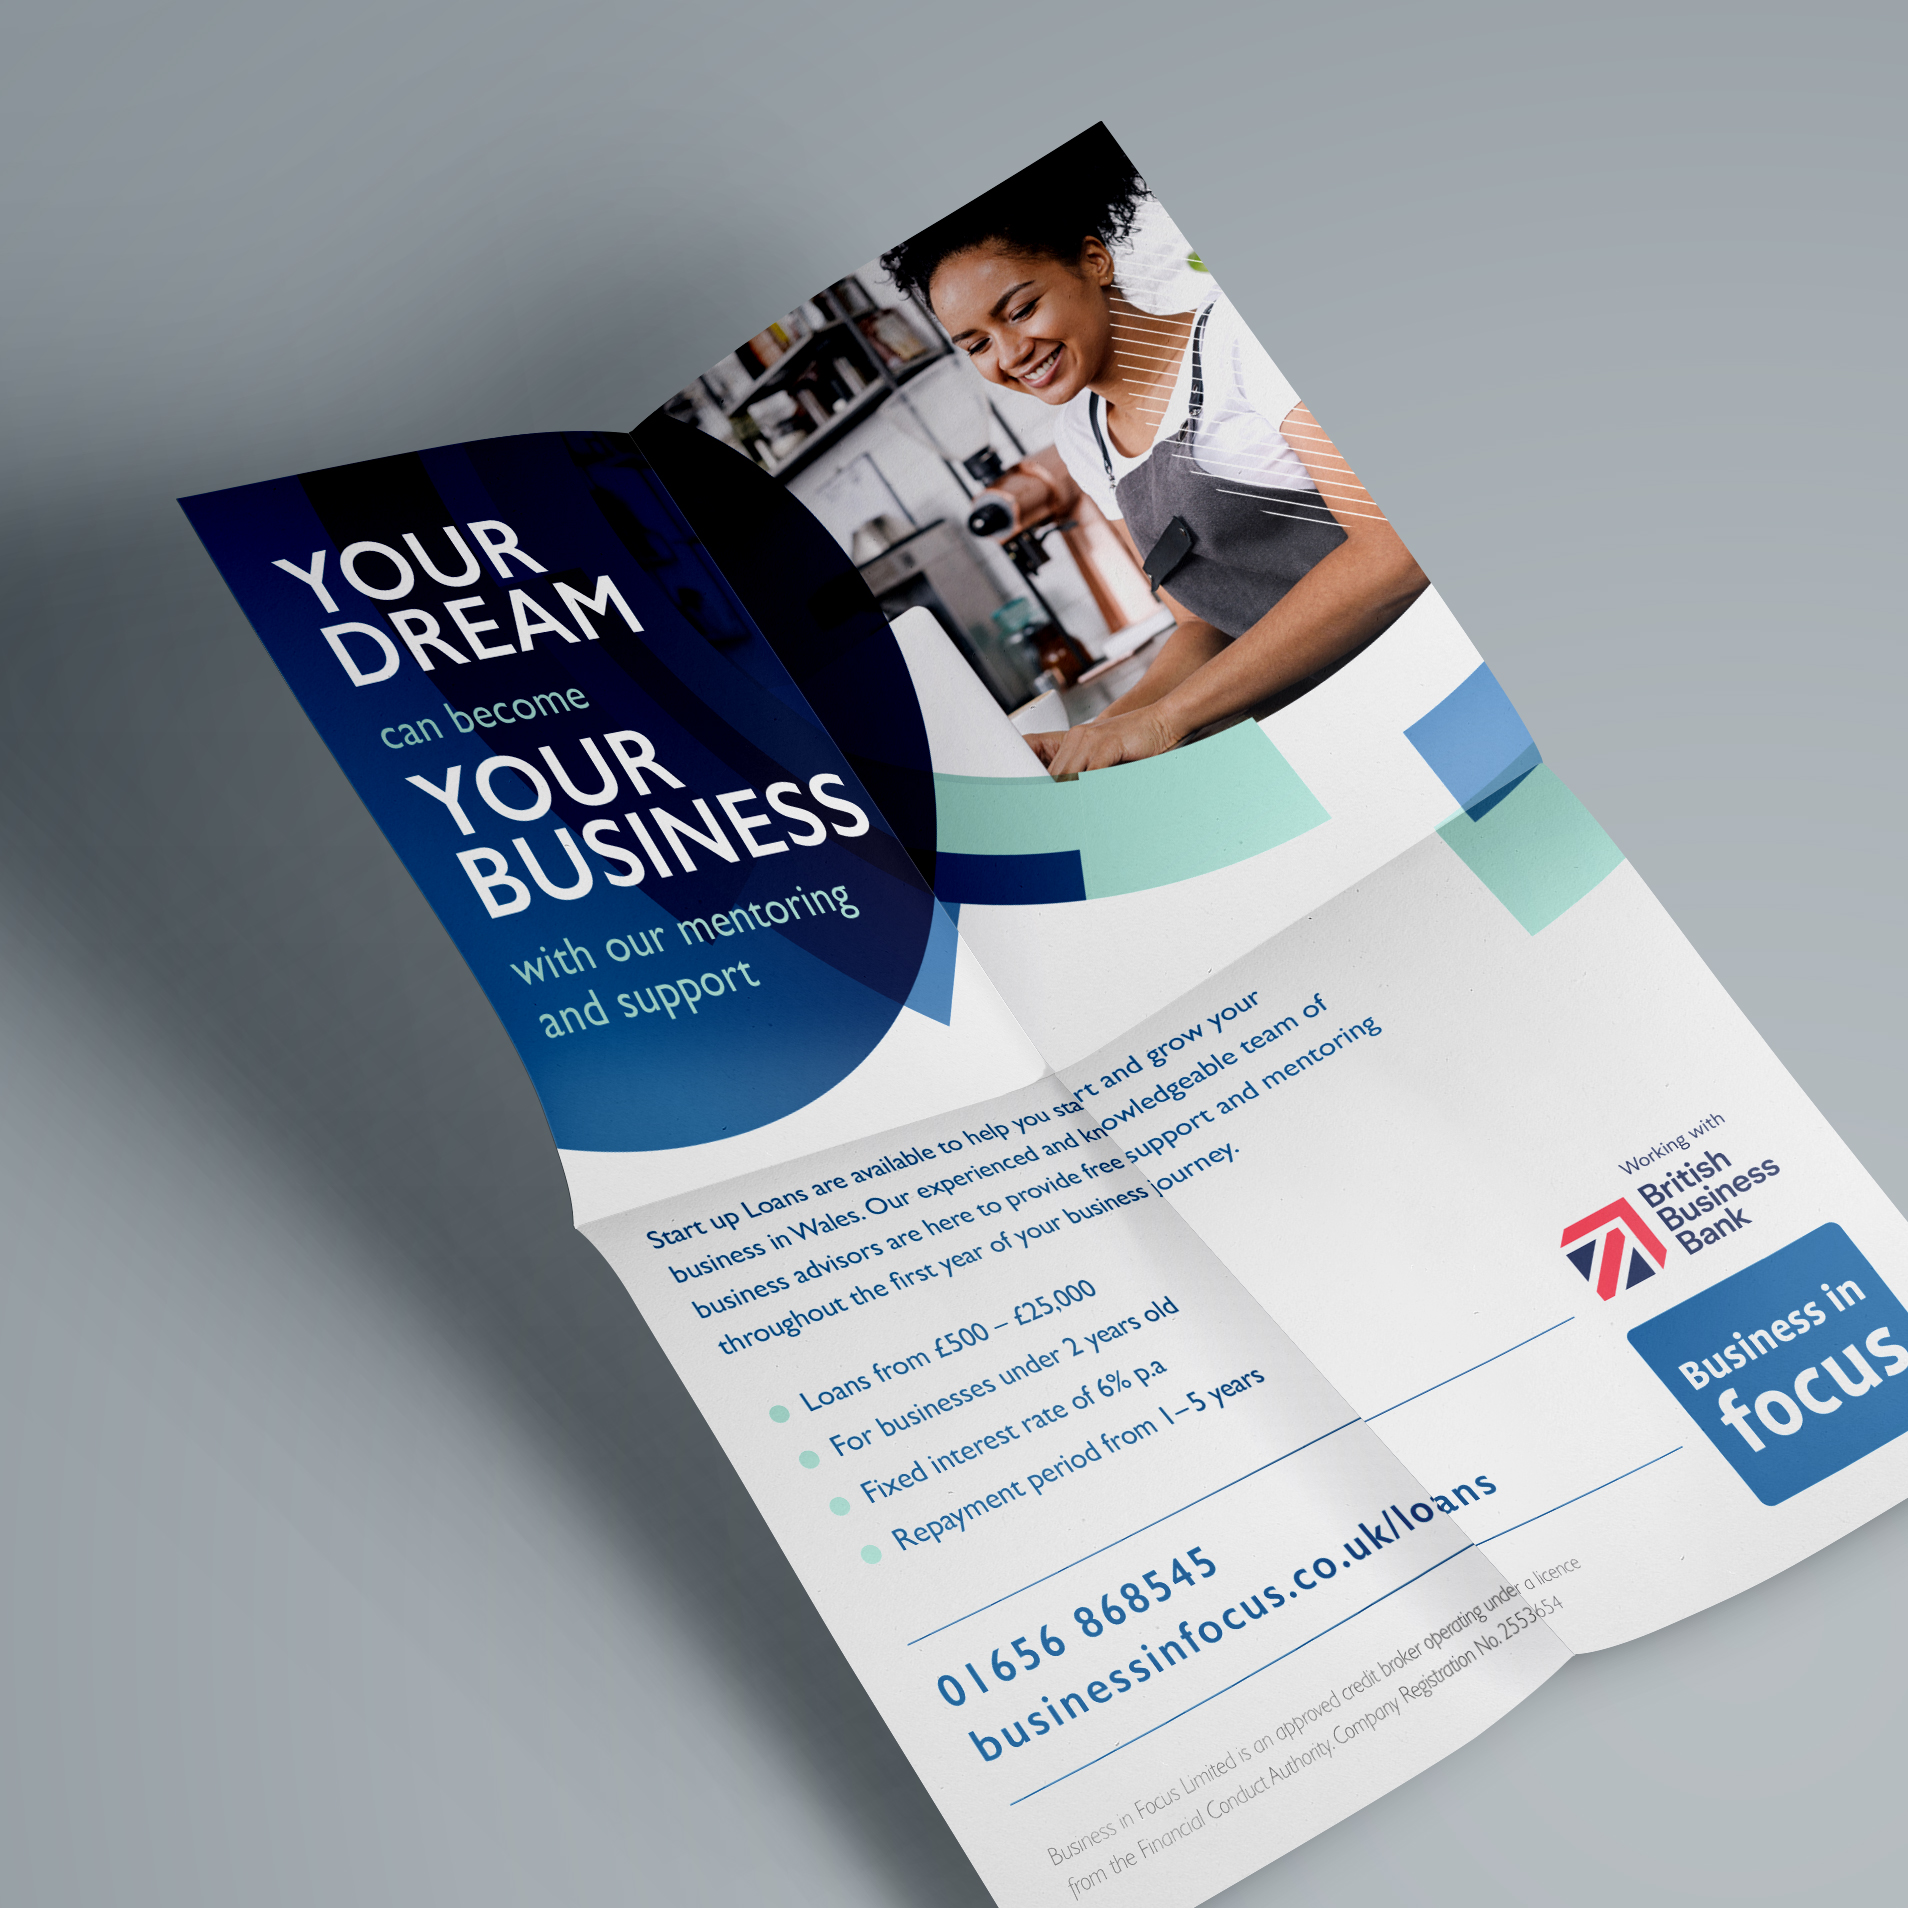 Business in Focus Start Up loan leaflet